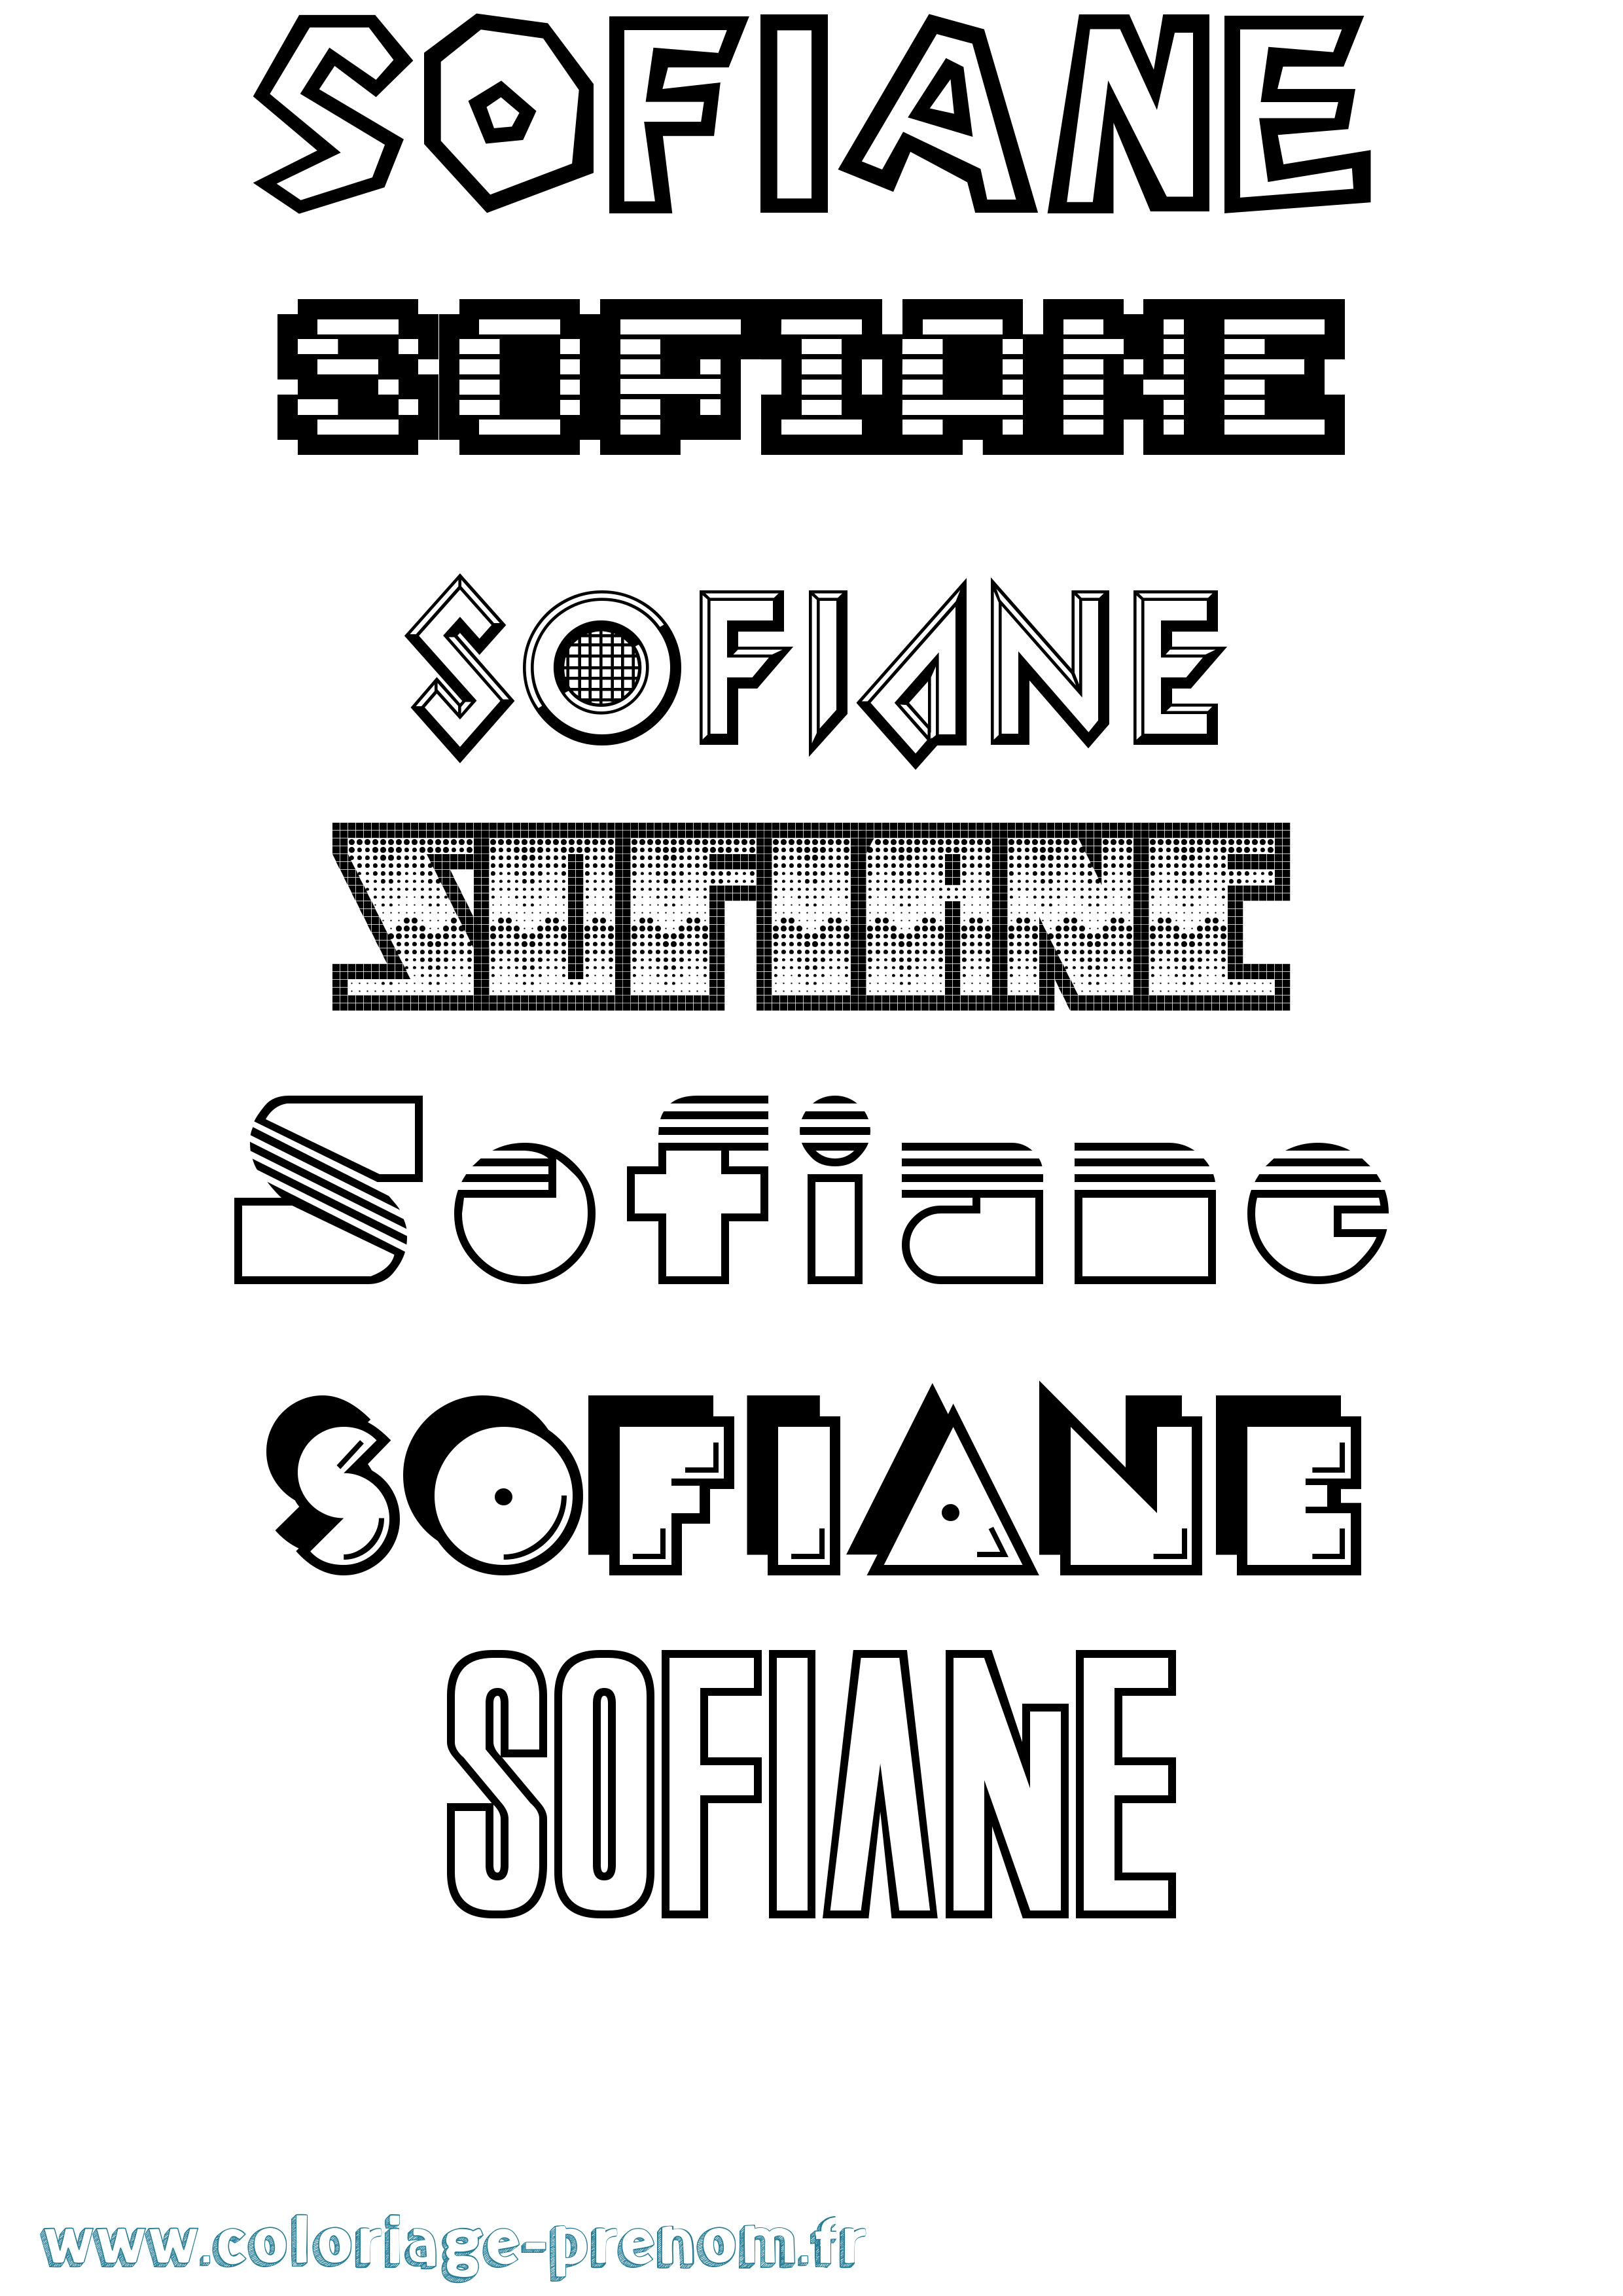 Coloriage prénom Sofiane